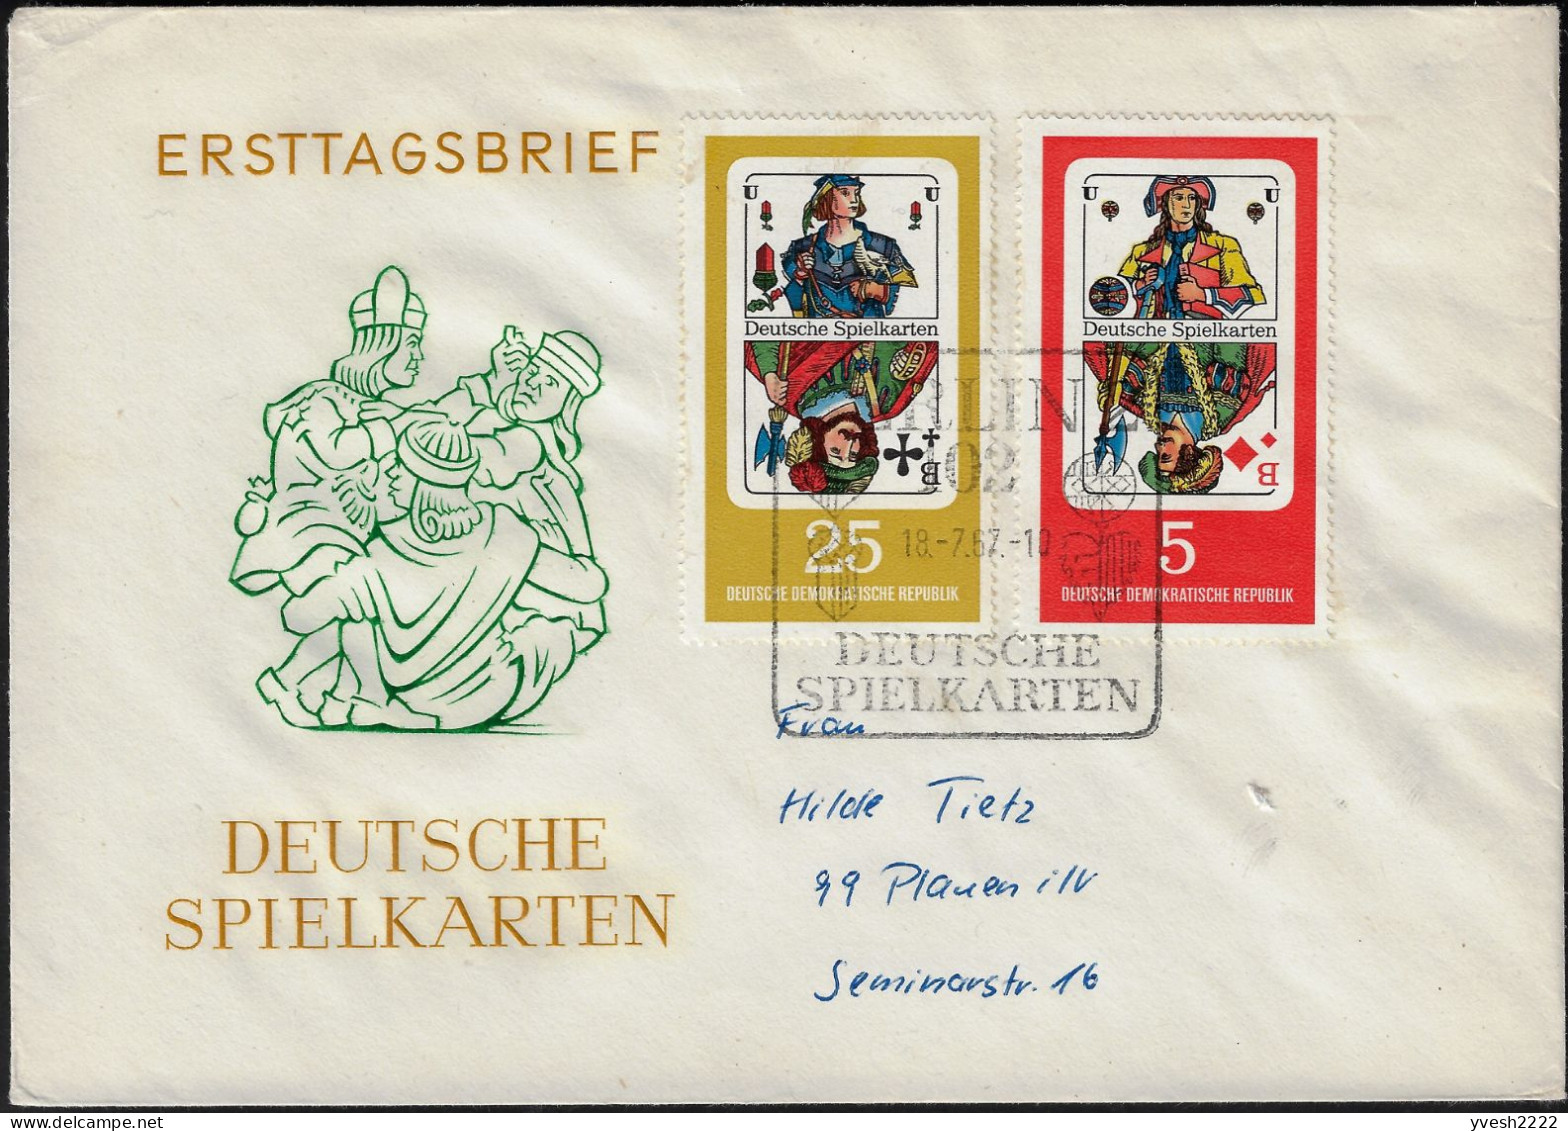 Allemagne Démocratique 1967 Y&T 995 à 998 Sur FDC. Cartes à Jouer. Valets De Carreau, De Coeur, De Pique Et De Trèfle - Non Classés